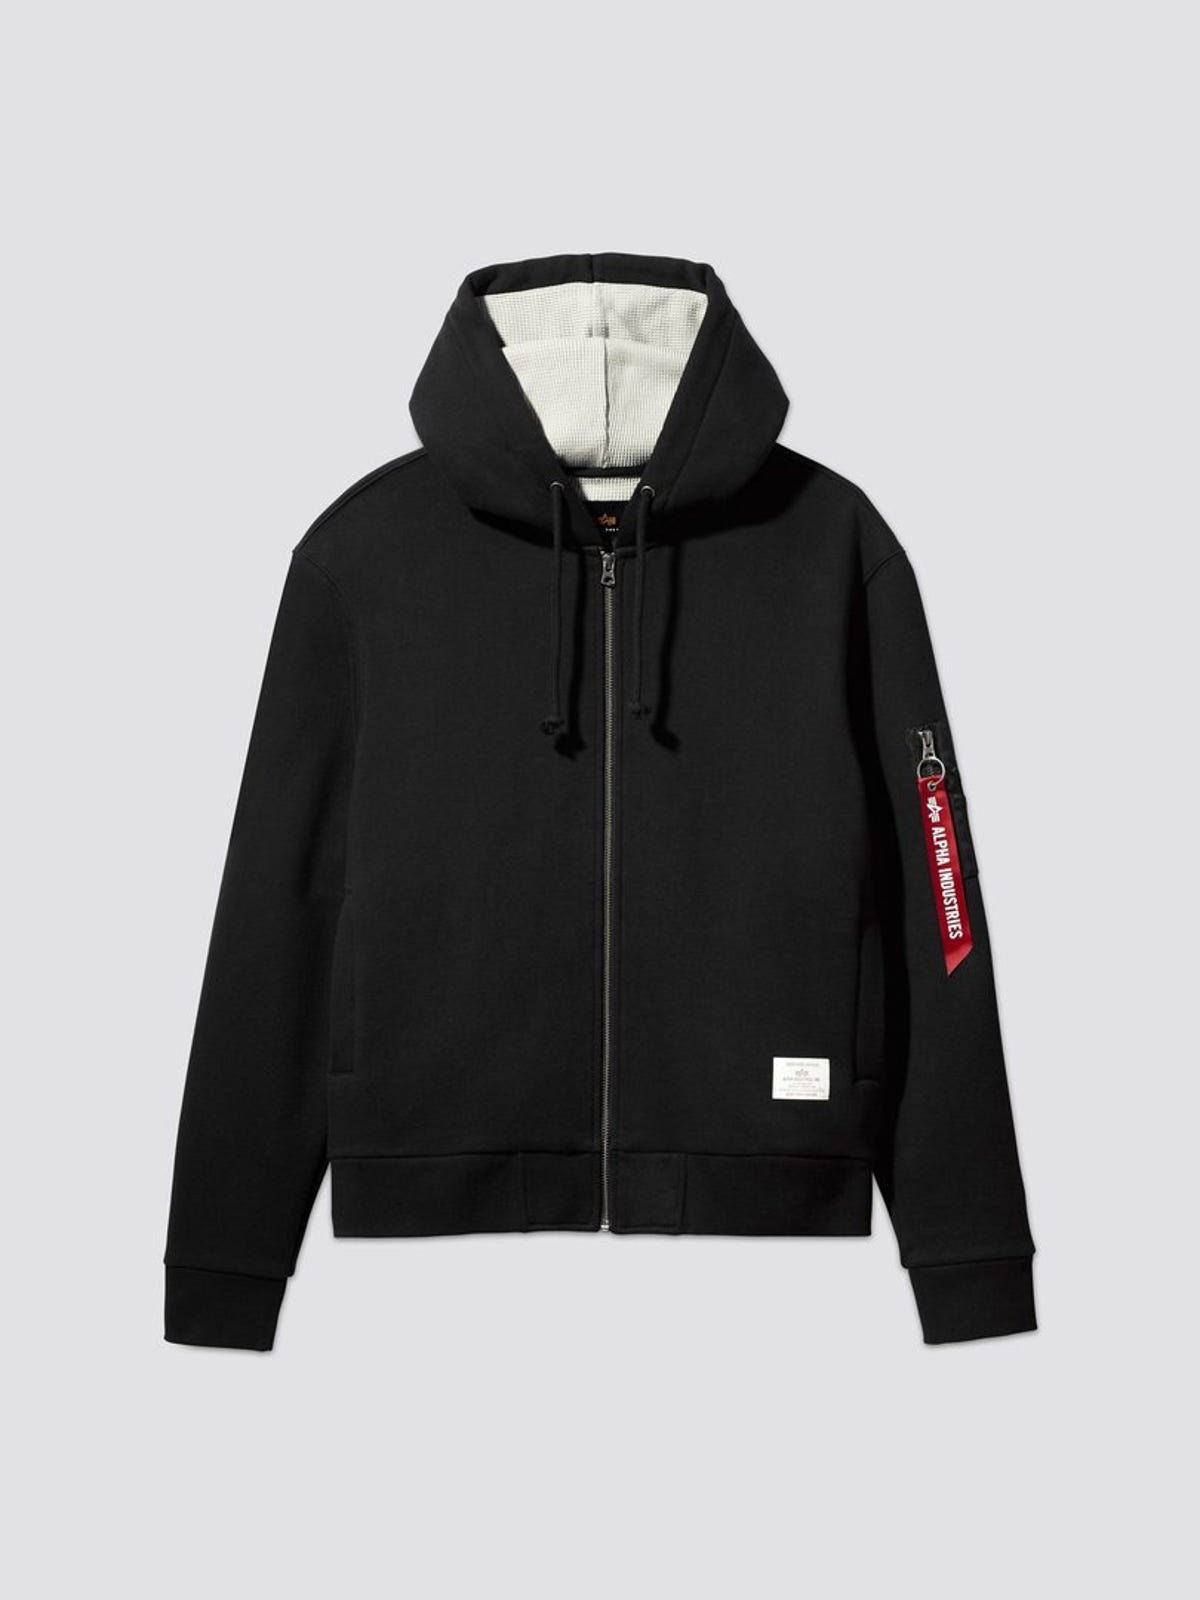 essential-full-zip-hoodie-top-317319-1080x1080